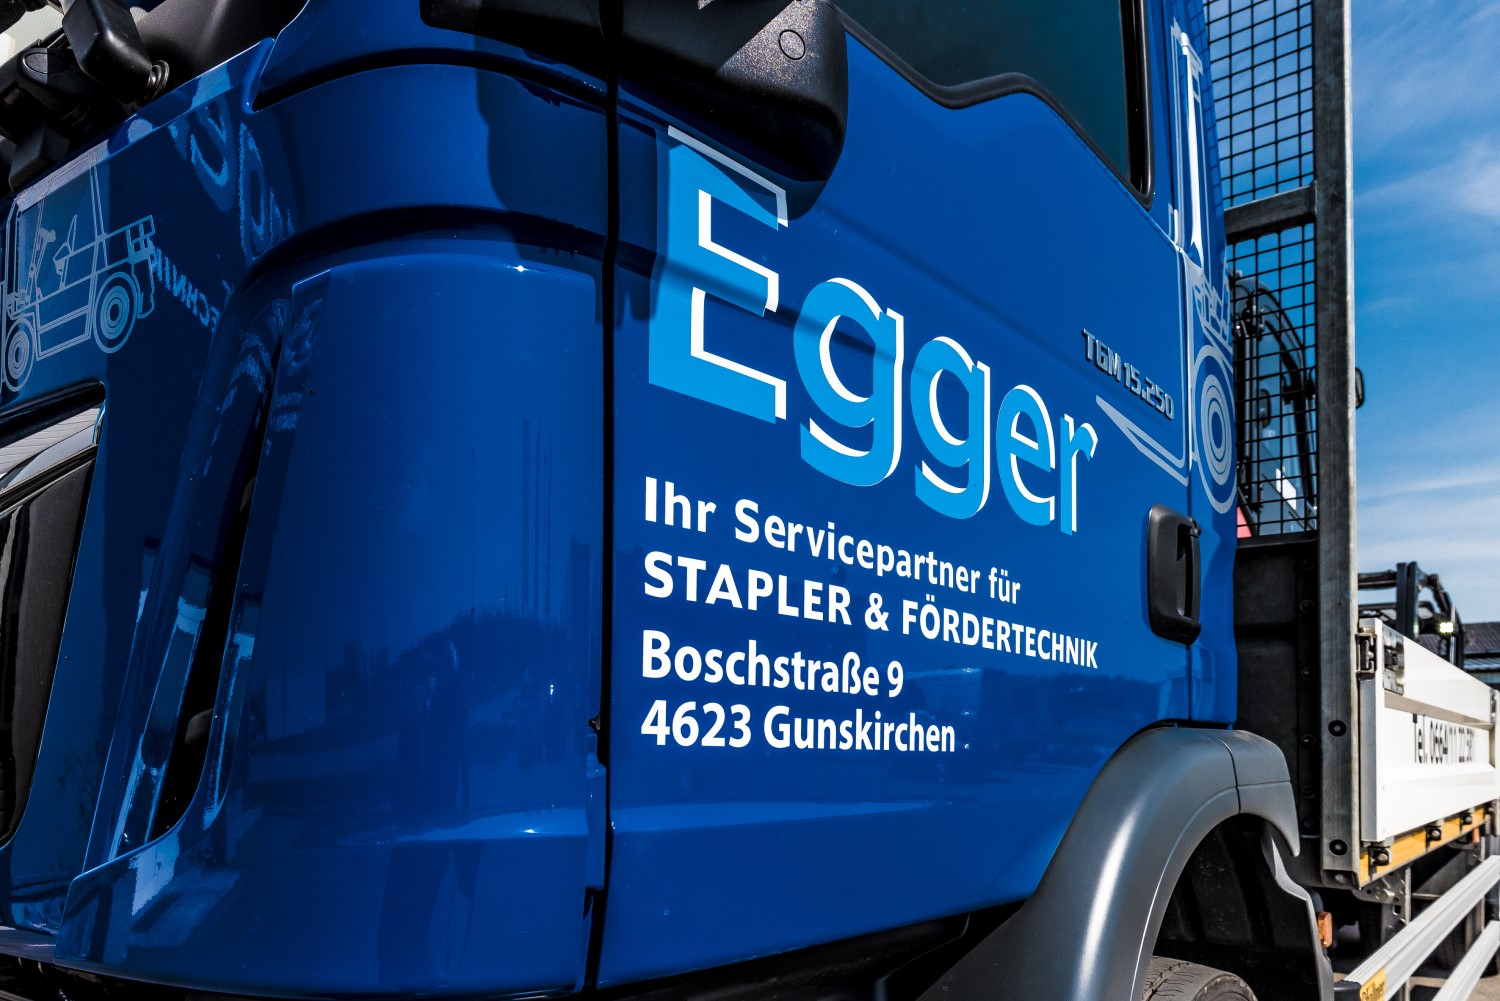 Bilder Egger Staplerservice GmbH & Co KG